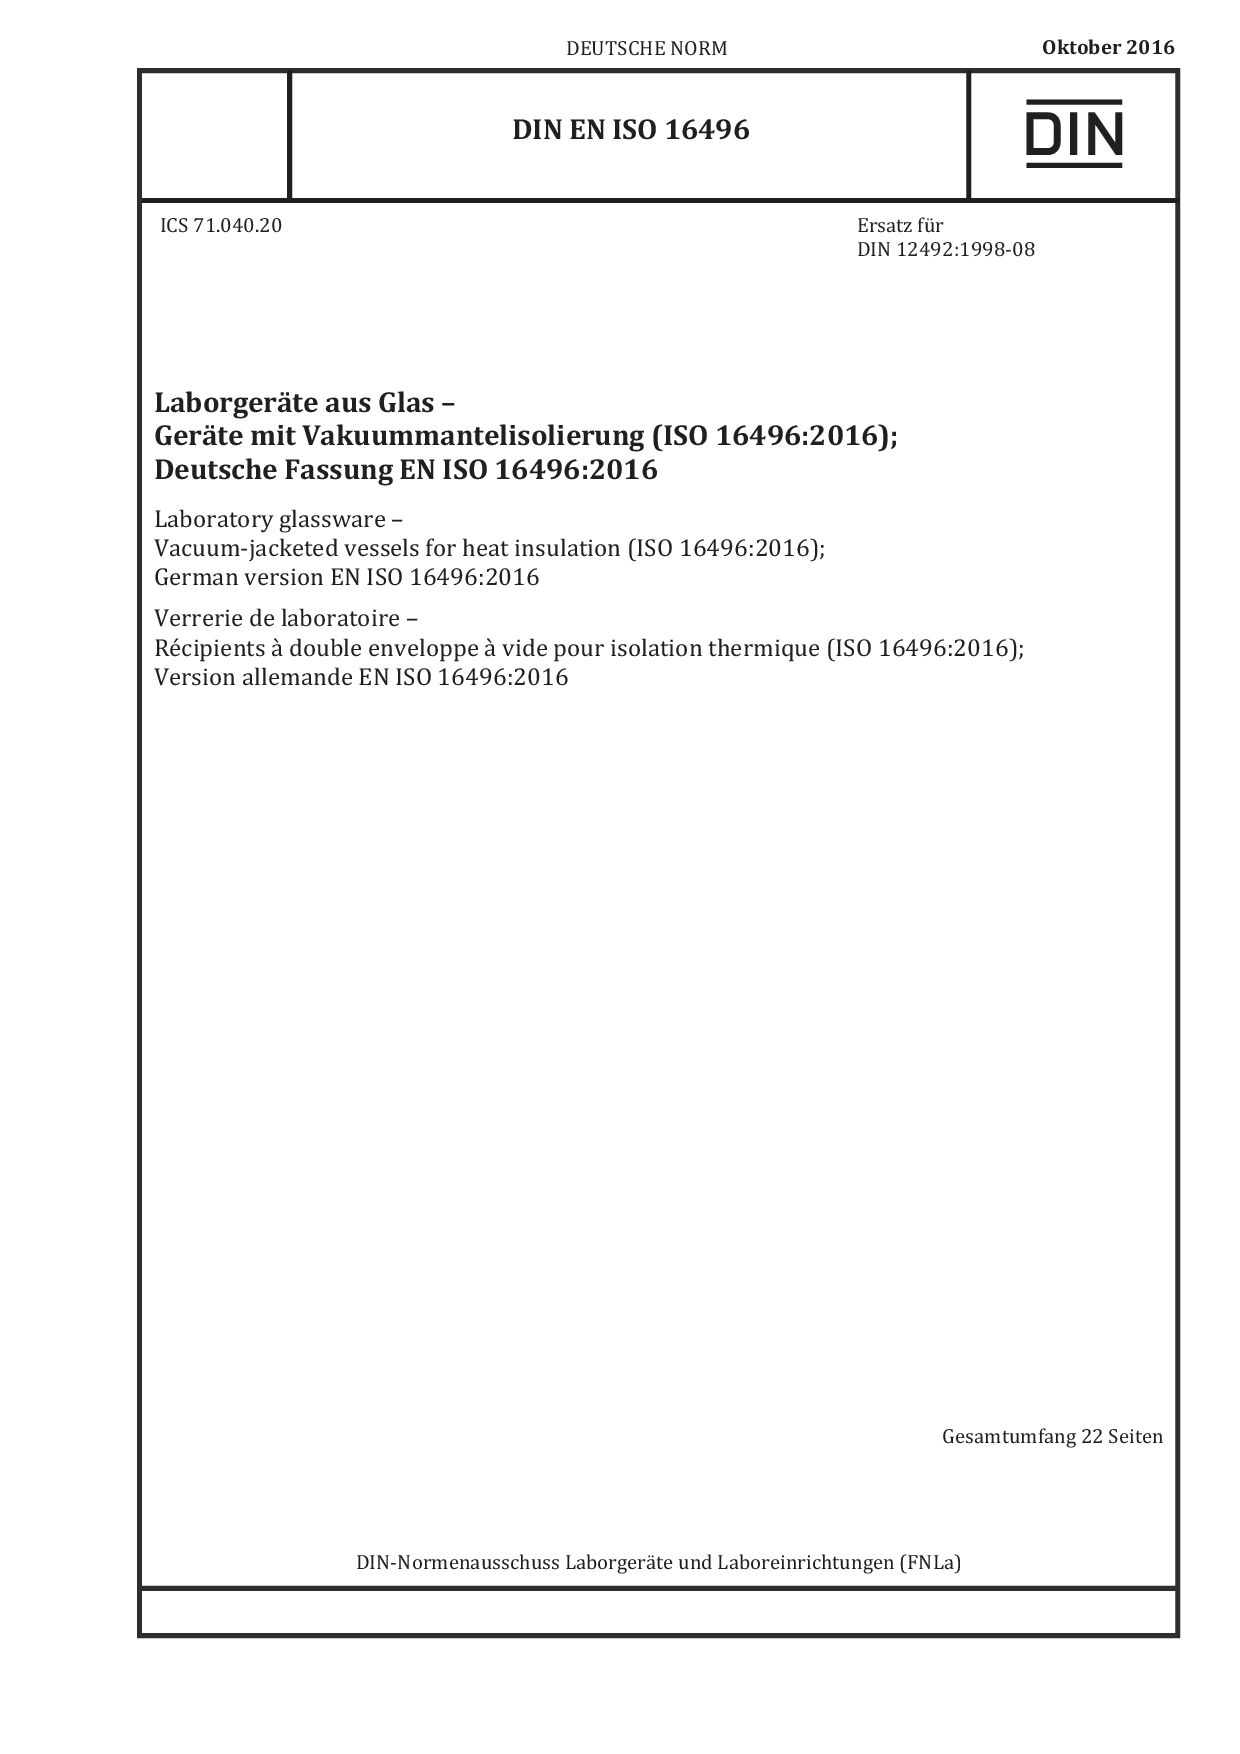 DIN EN ISO 16496:2016-10